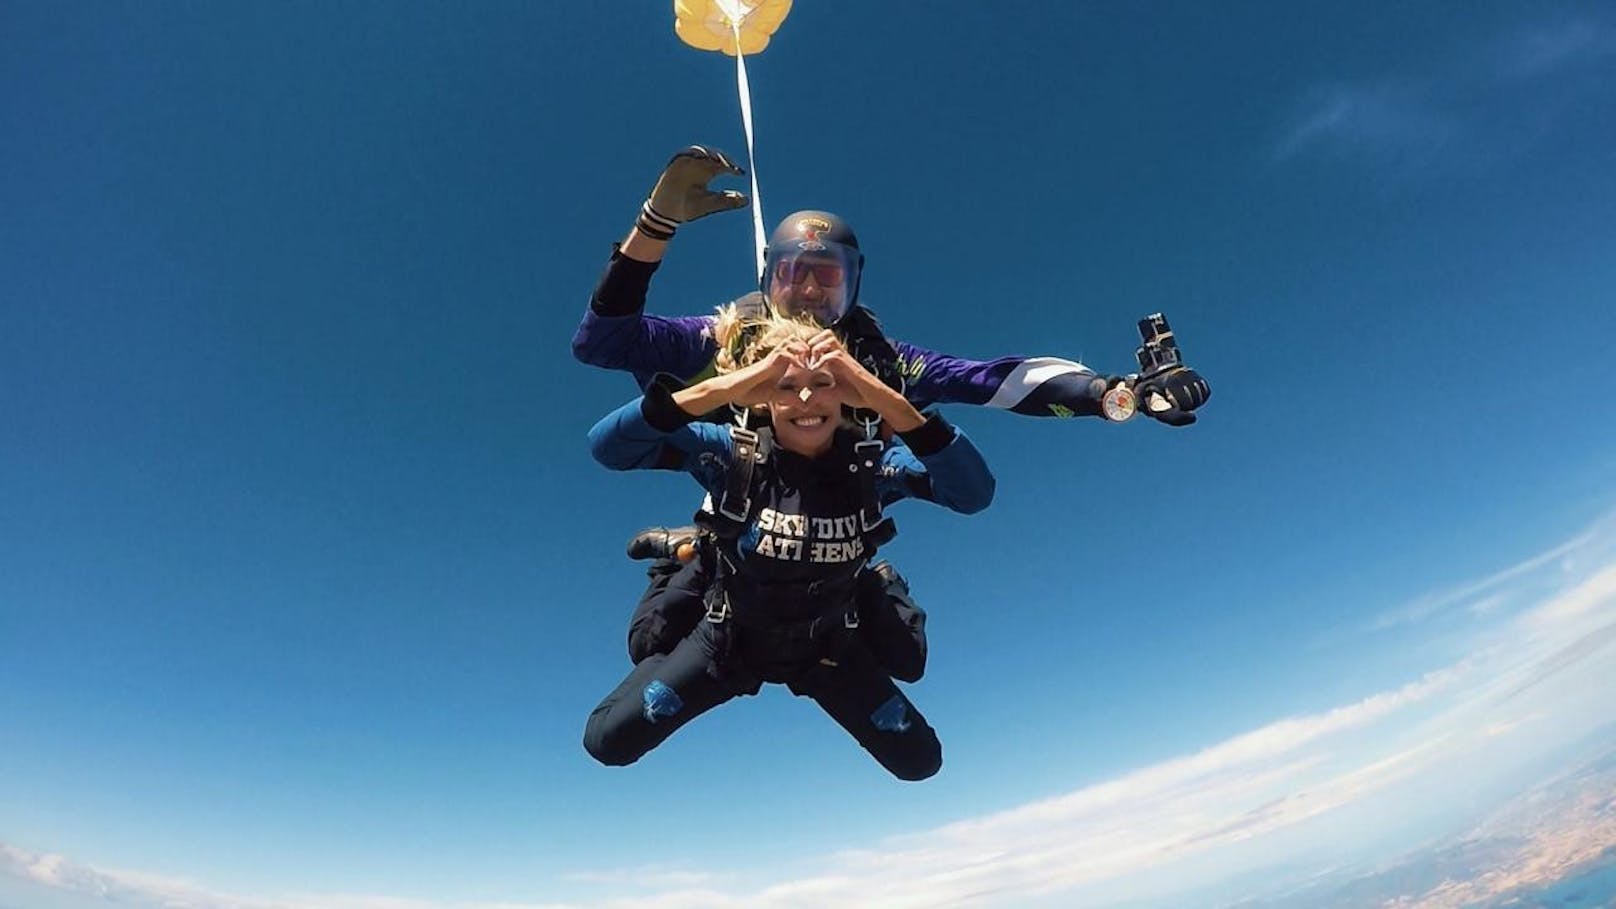 Gerda im Adrenalinrausch beim Skydiven (hinten: Skydive-Lehrer)